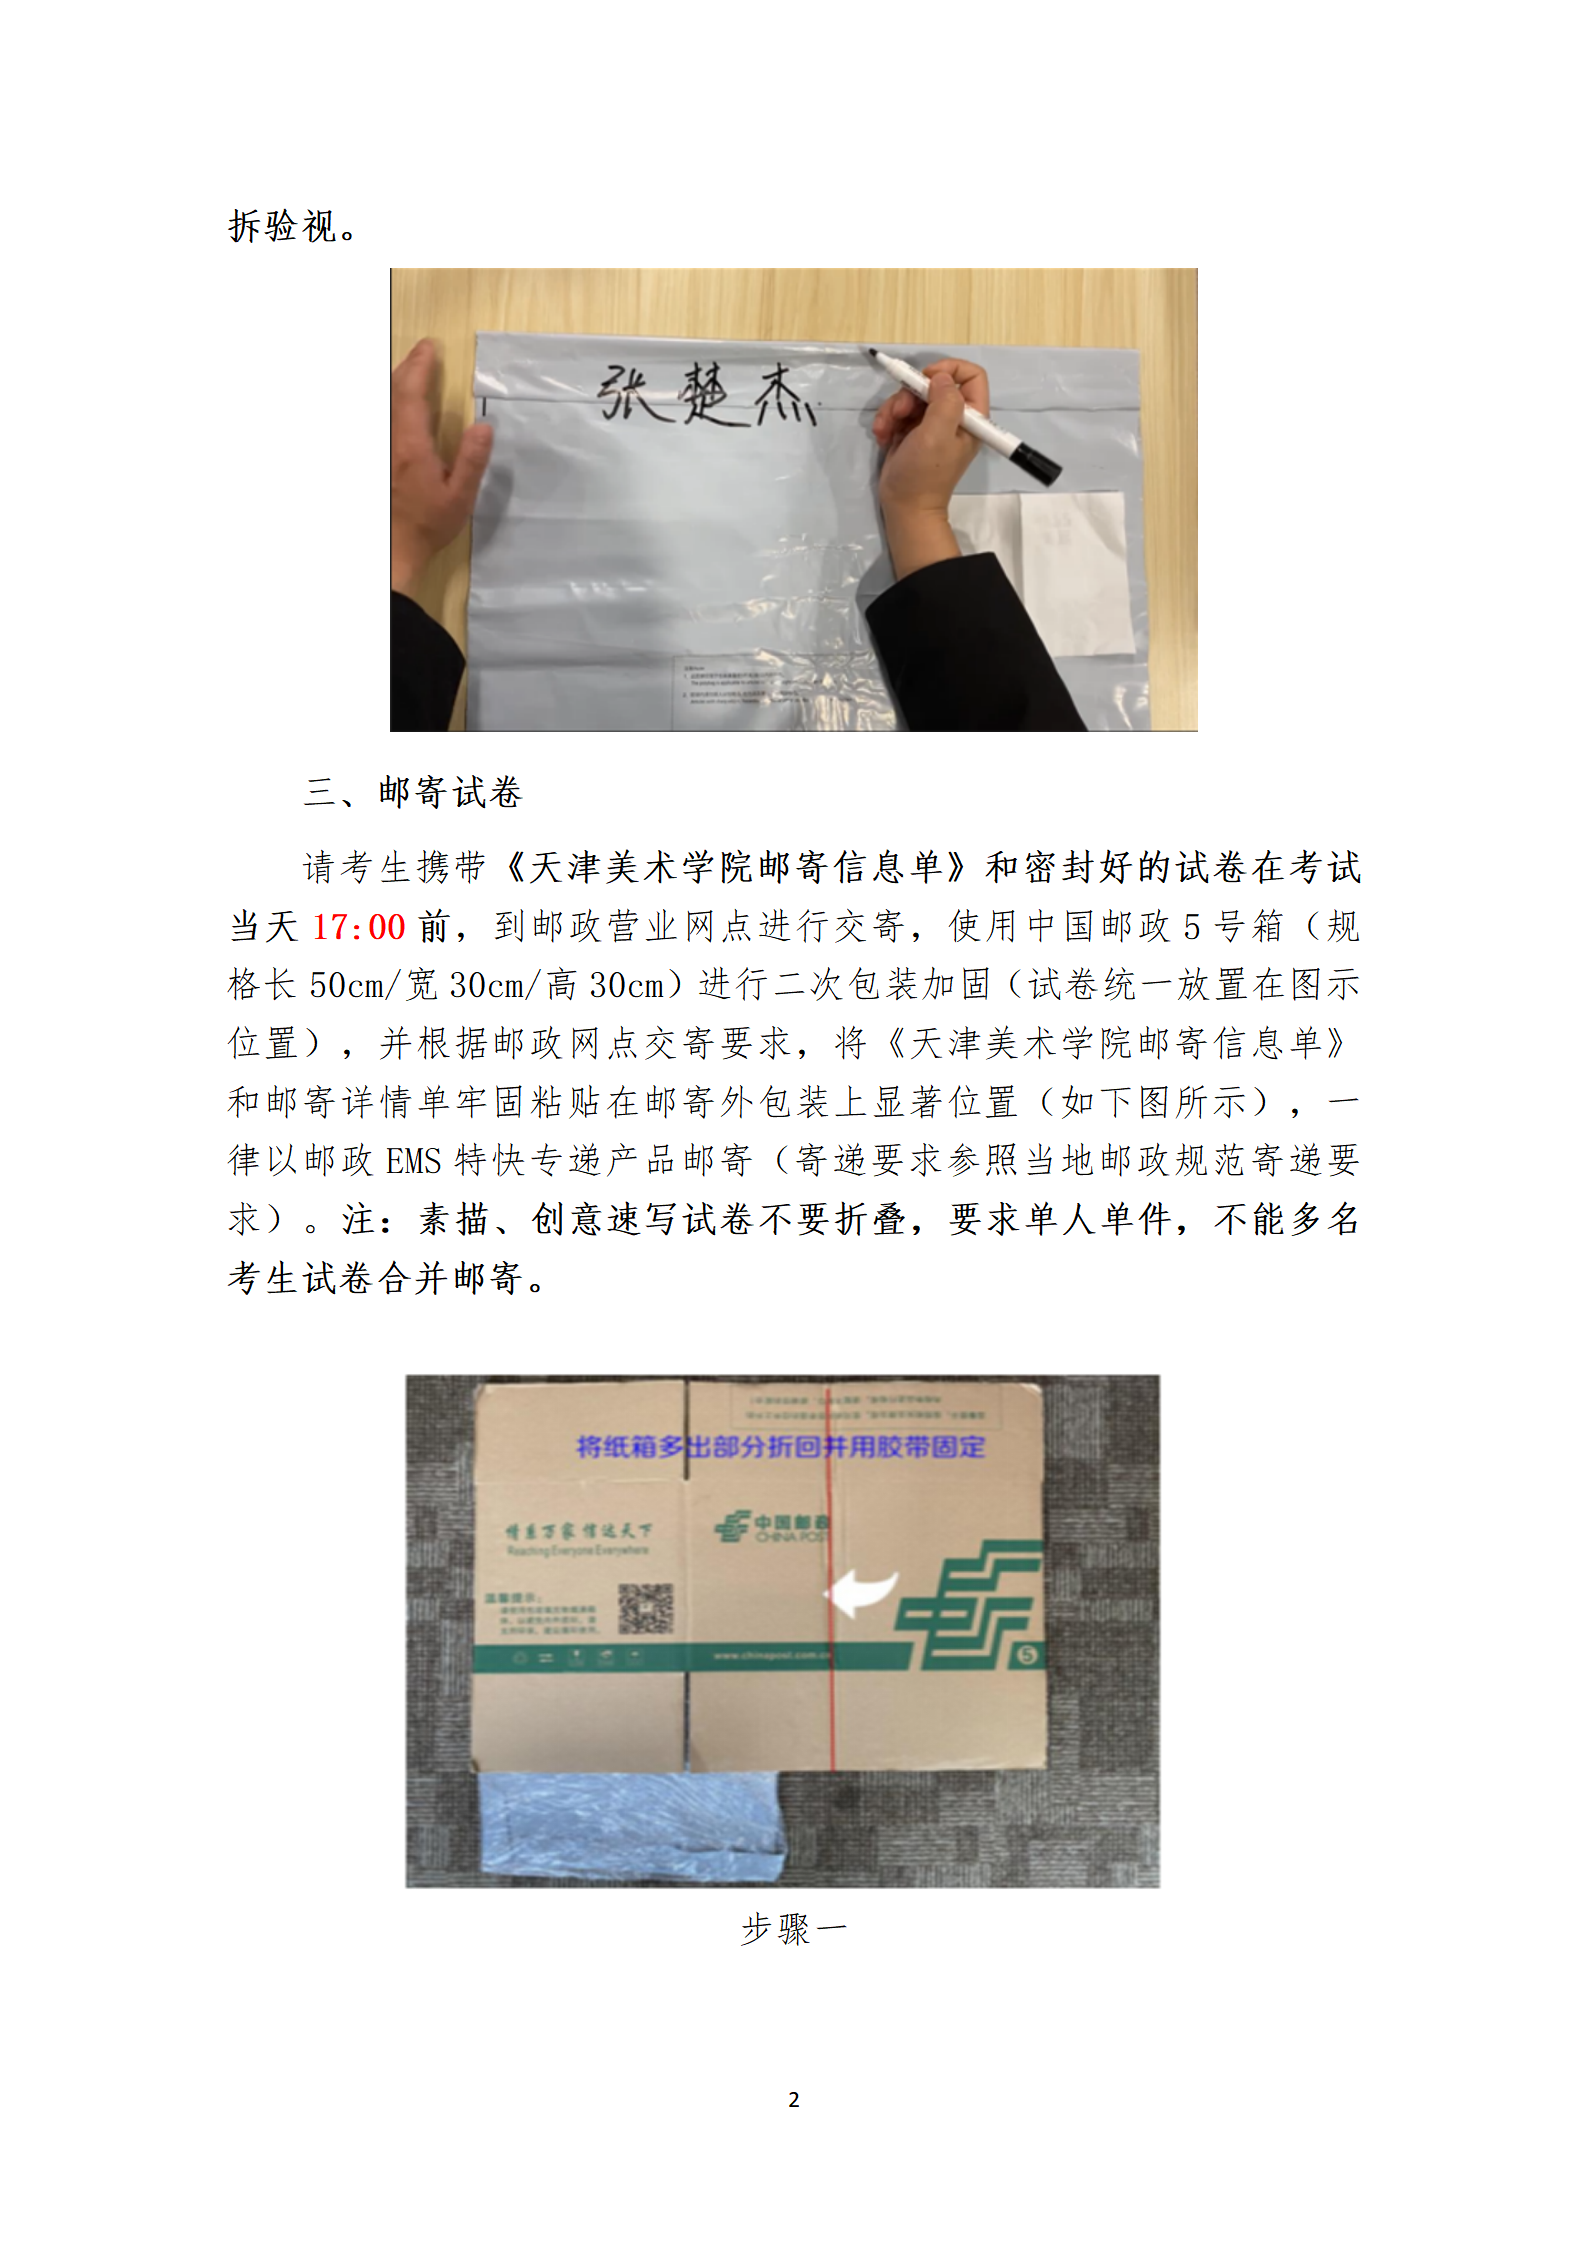 附件1：天津美术学院2023年本科招生线上初选试卷封装及邮寄要求_02.png